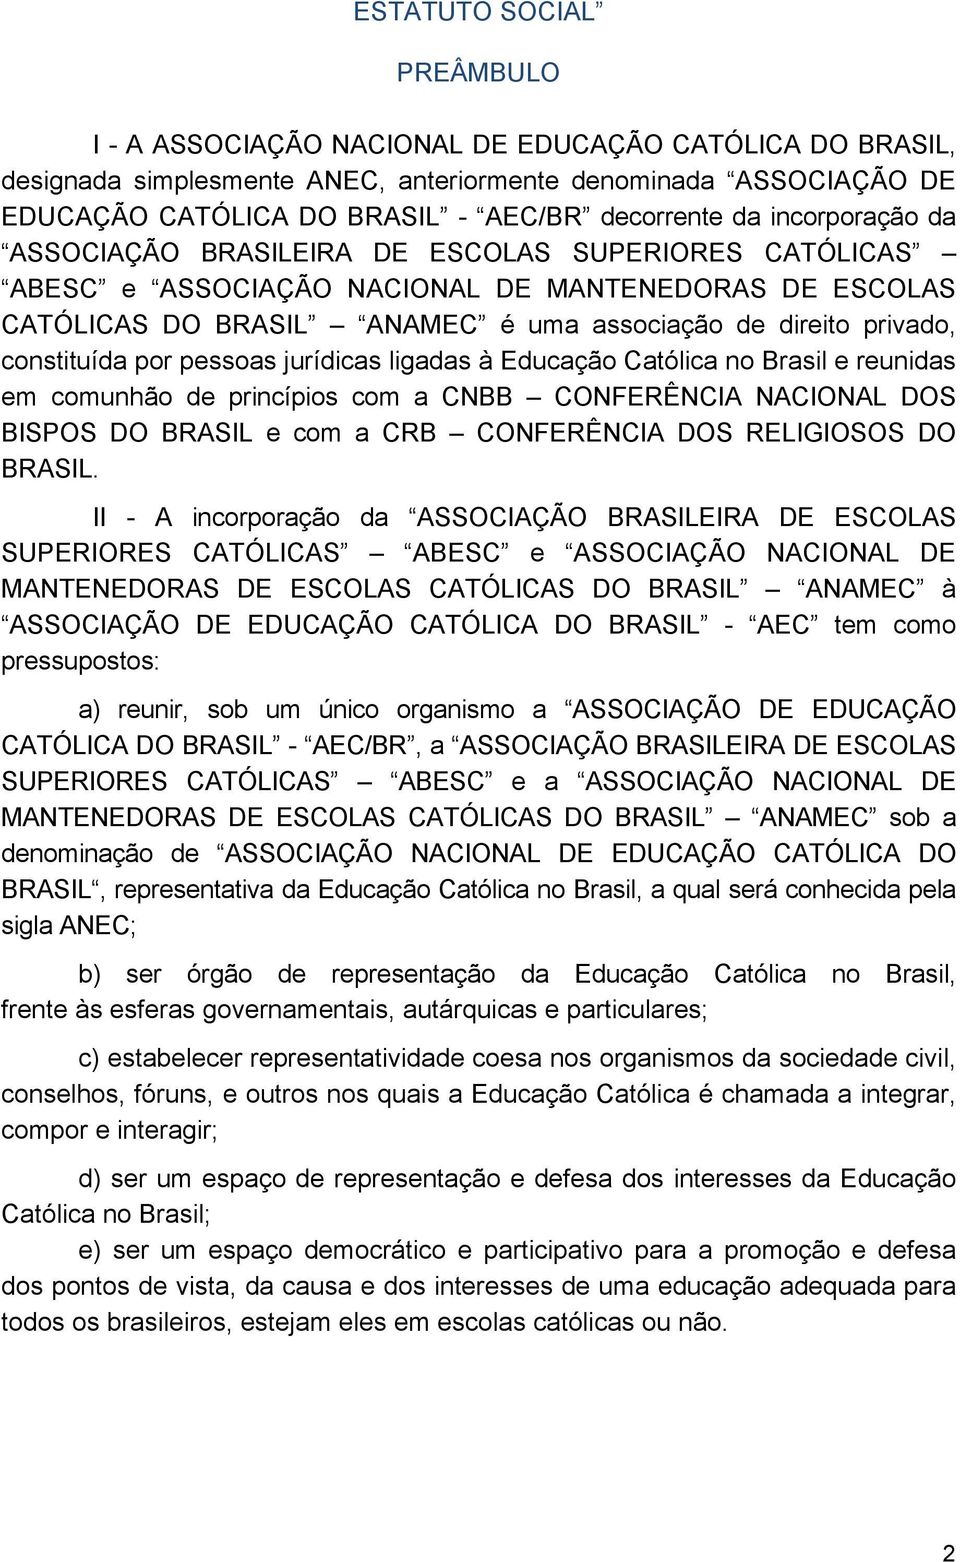 constituída por pessoas jurídicas ligadas à Educação Católica no Brasil e reunidas em comunhão de princípios com a CNBB CONFERÊNCIA NACIONAL DOS BISPOS DO BRASIL e com a CRB CONFERÊNCIA DOS